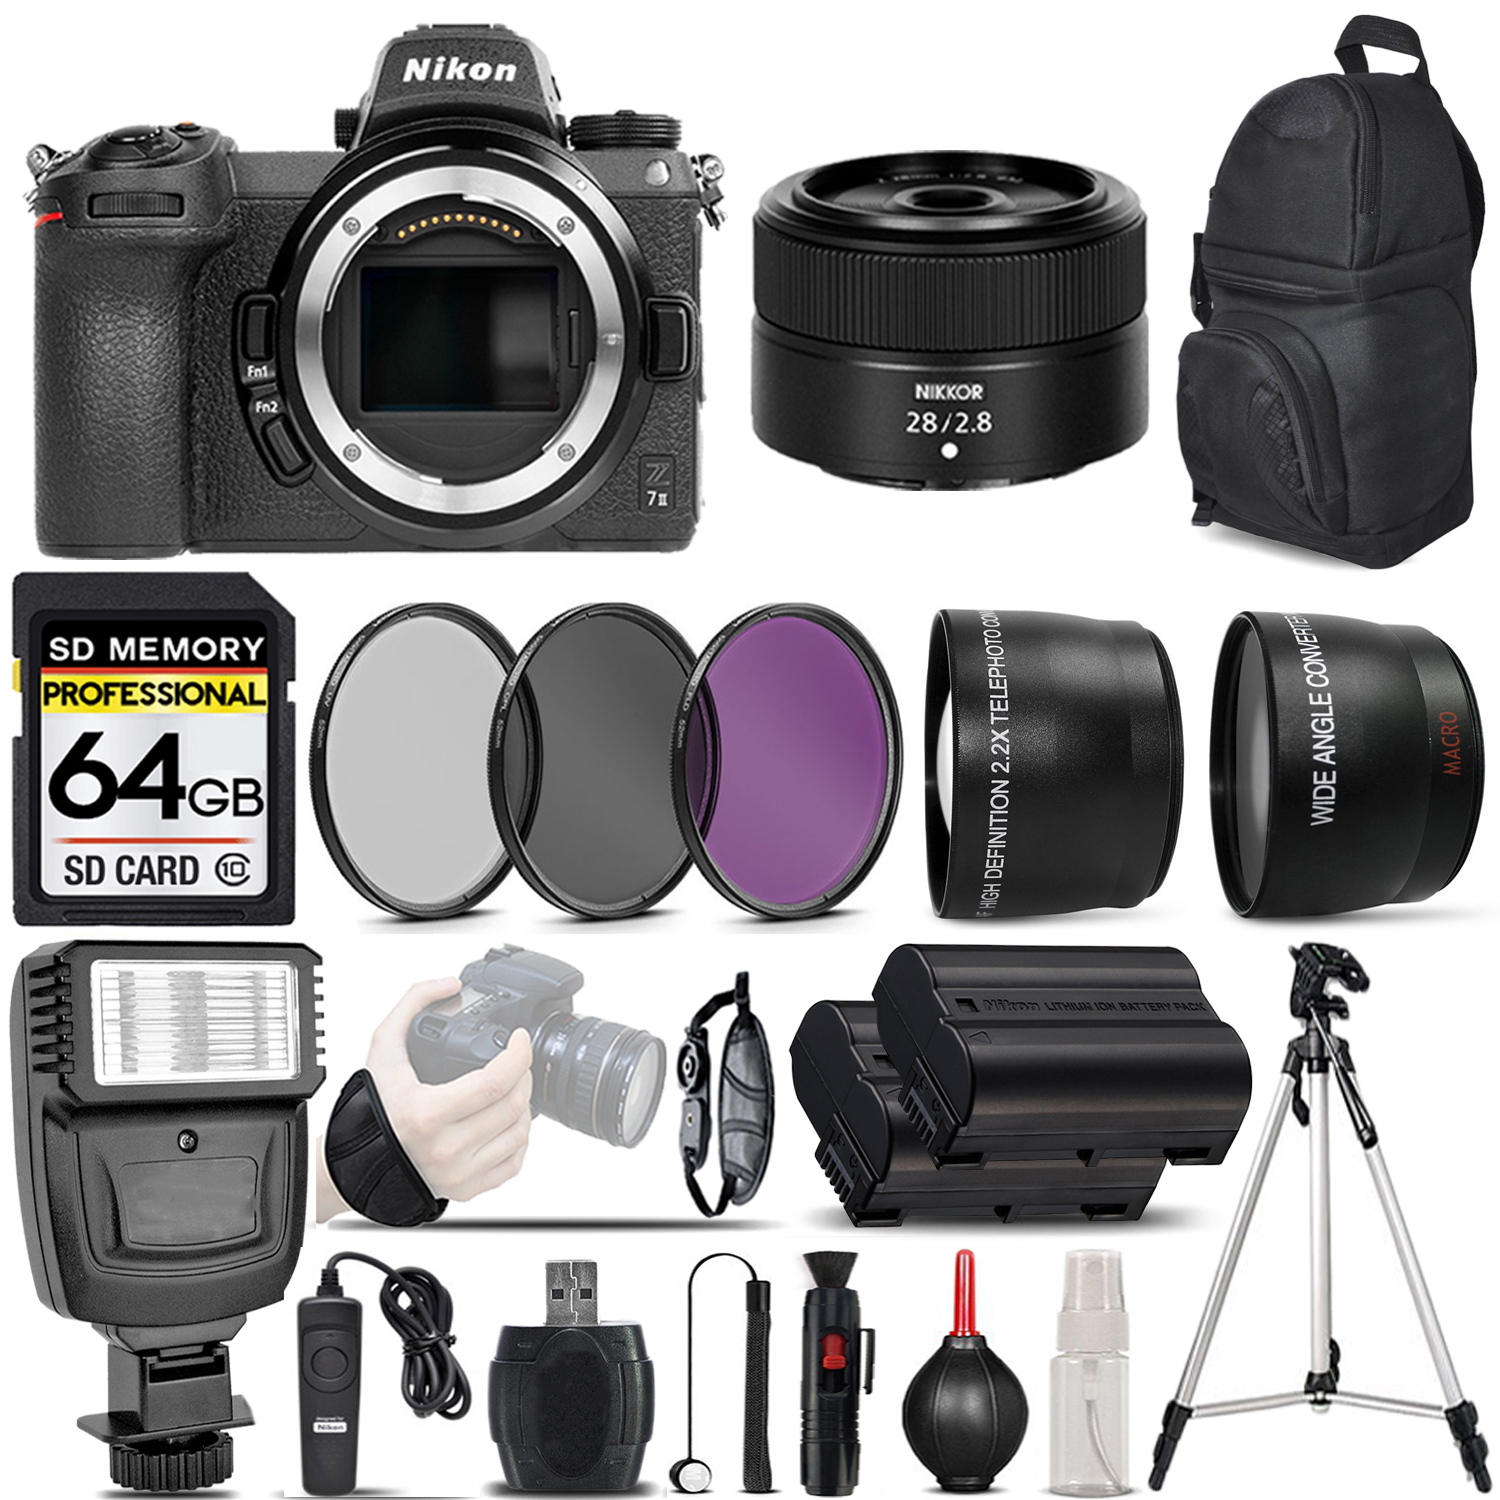 Z7 II Digital Camera + 28mm f/2.8 Lens + Flash - 64GB Basic Bundle *FREE SHIPPING*